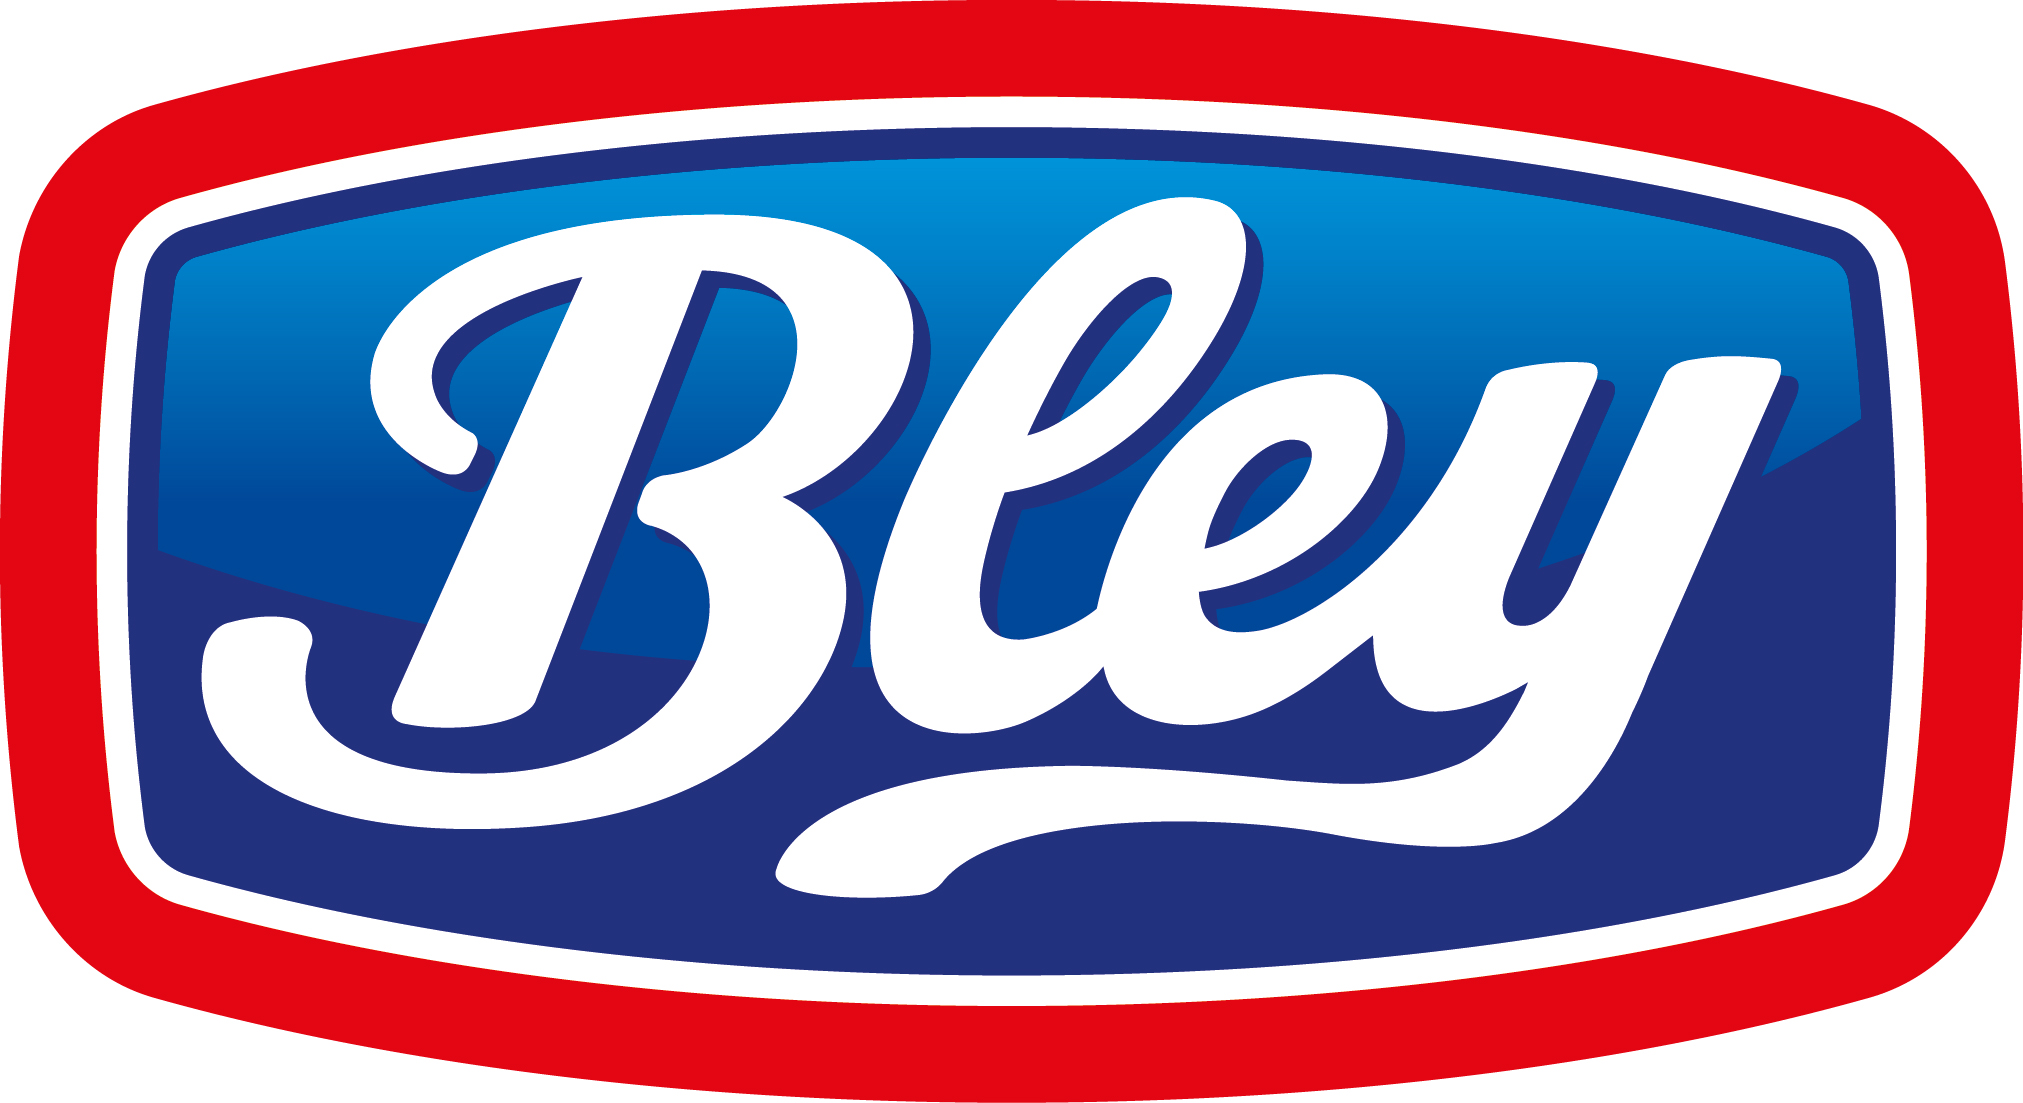 Bley Fleisch- und Wurstwaren GmbH